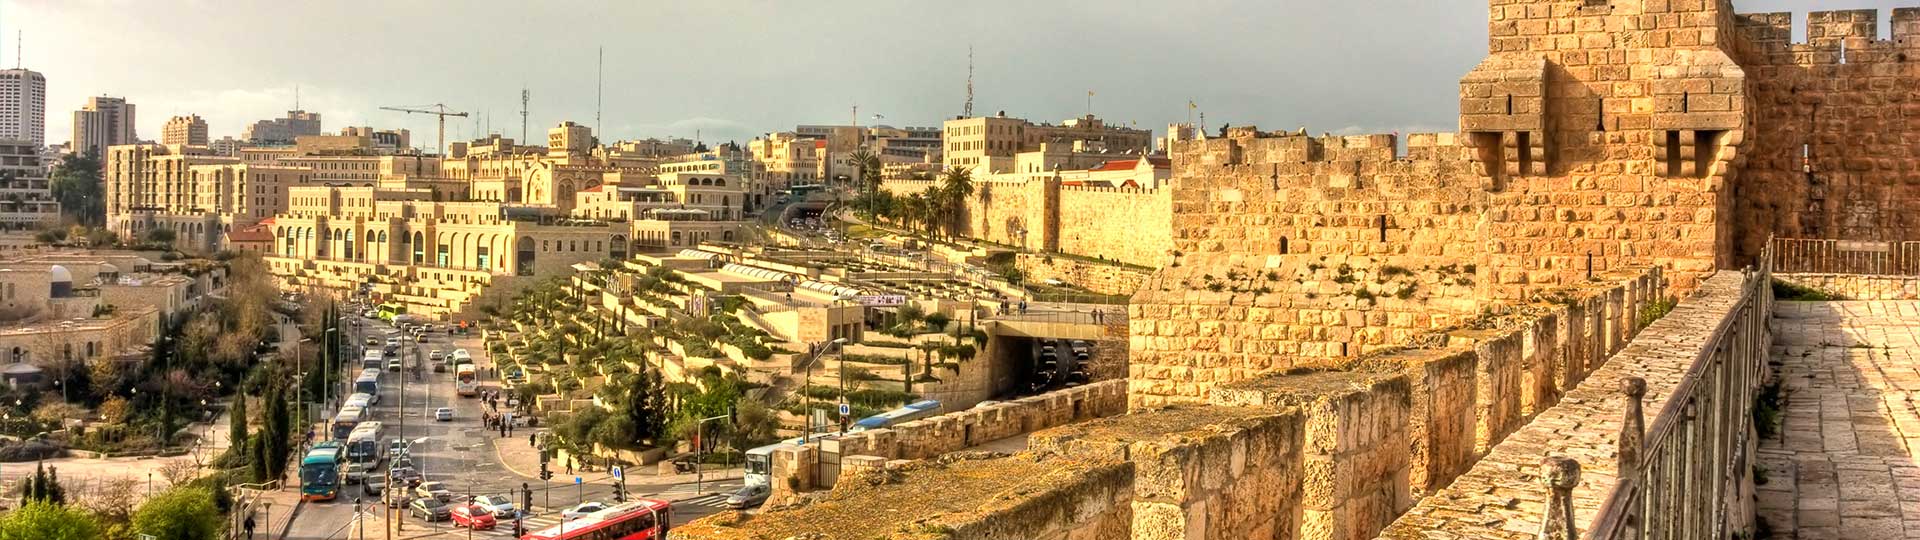 העיר העתיקה, ירושלים